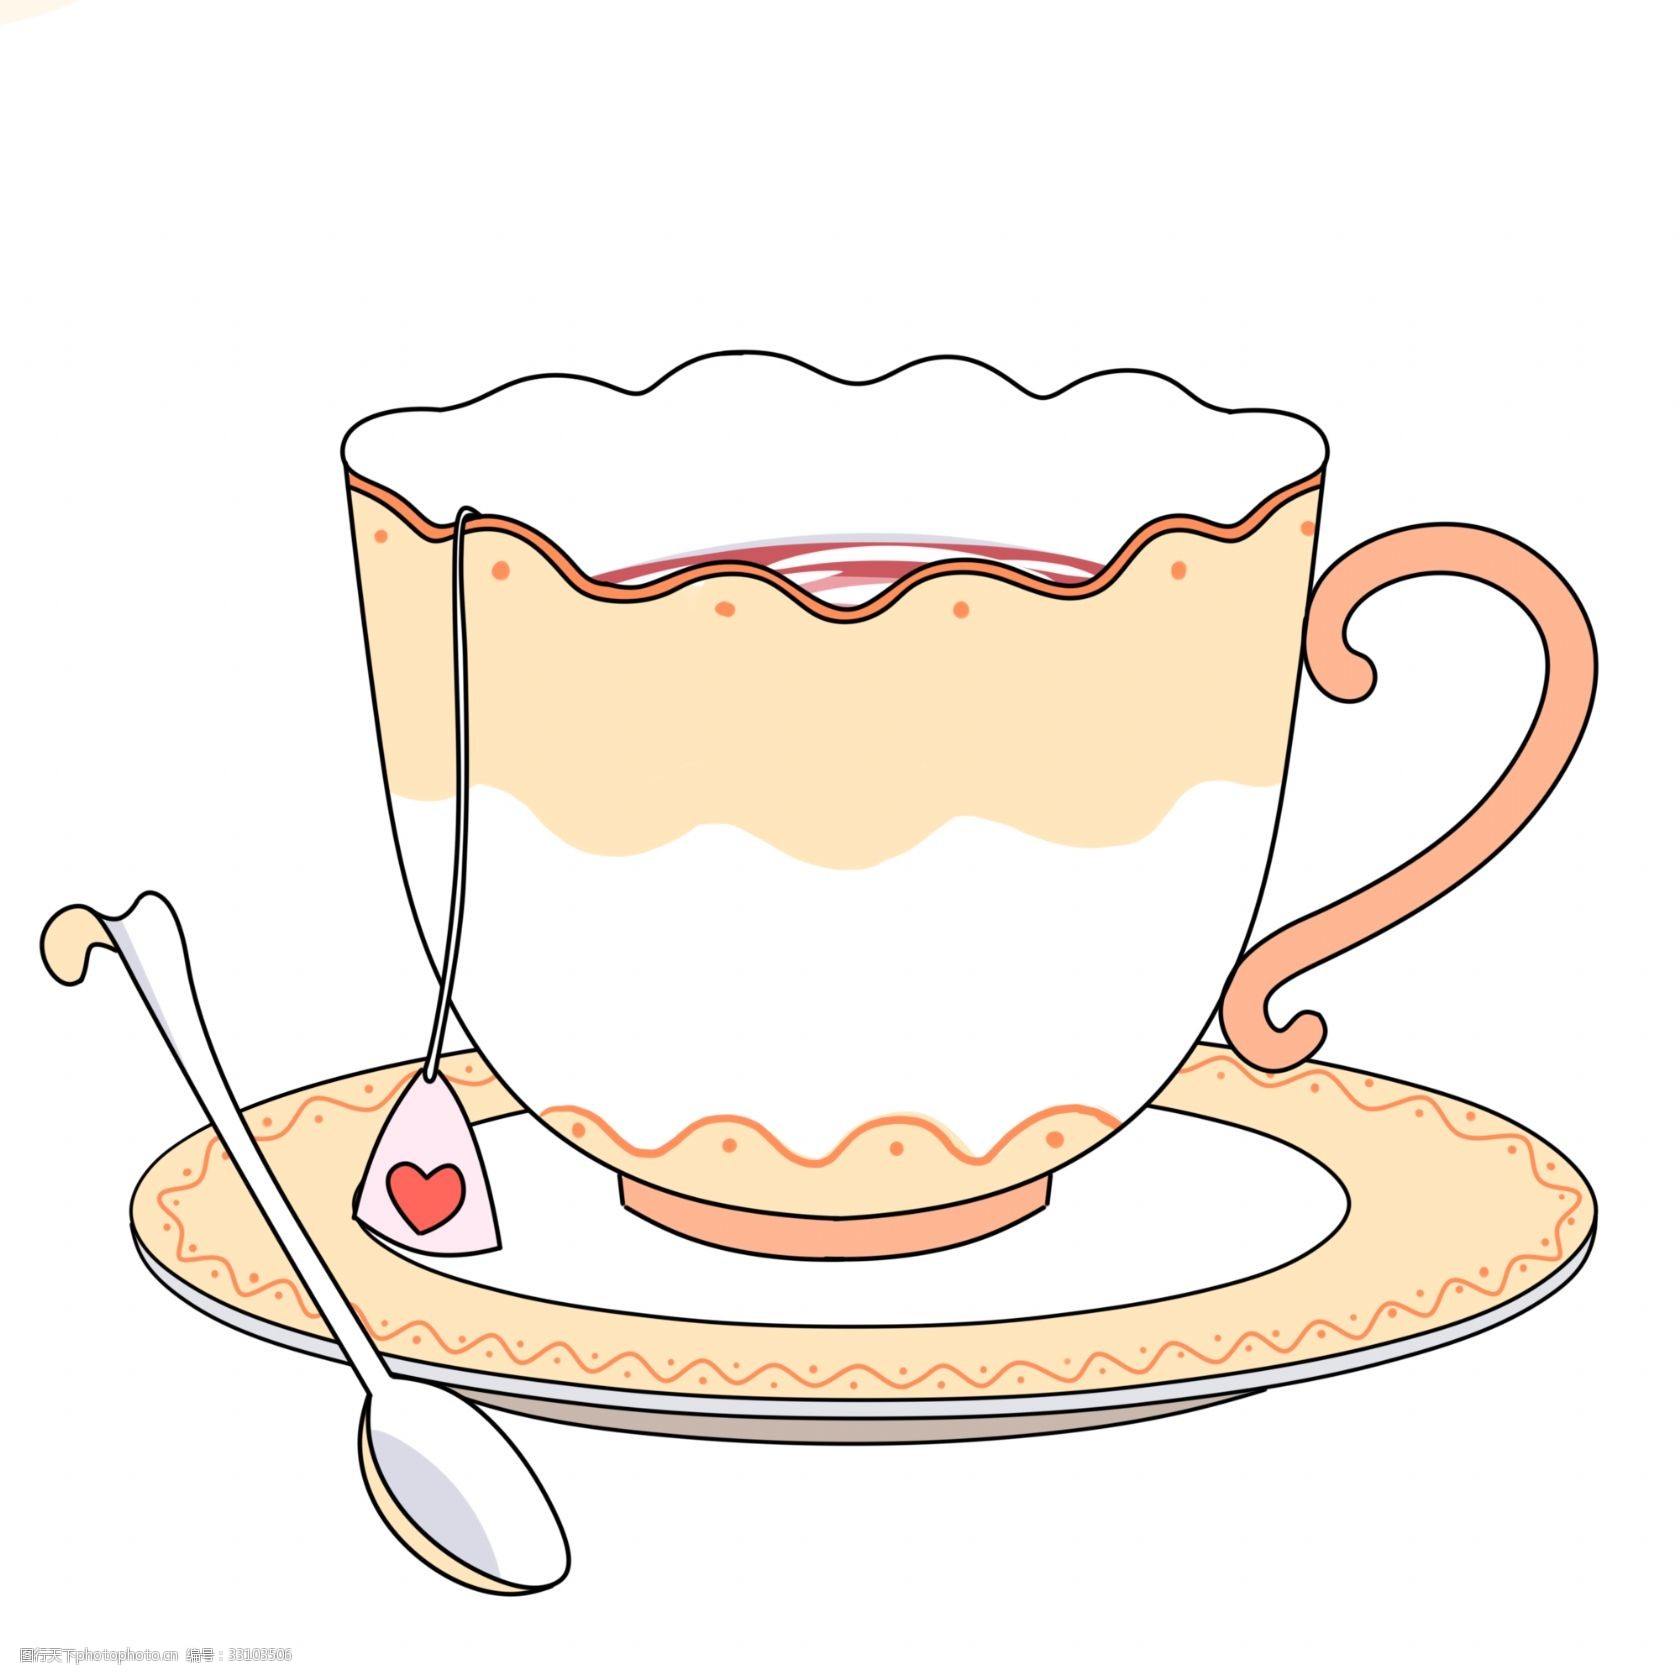 关键词:生活用品杯子粉色 生活用品 杯子 茶杯 粉色 下午茶 可爱 免抠